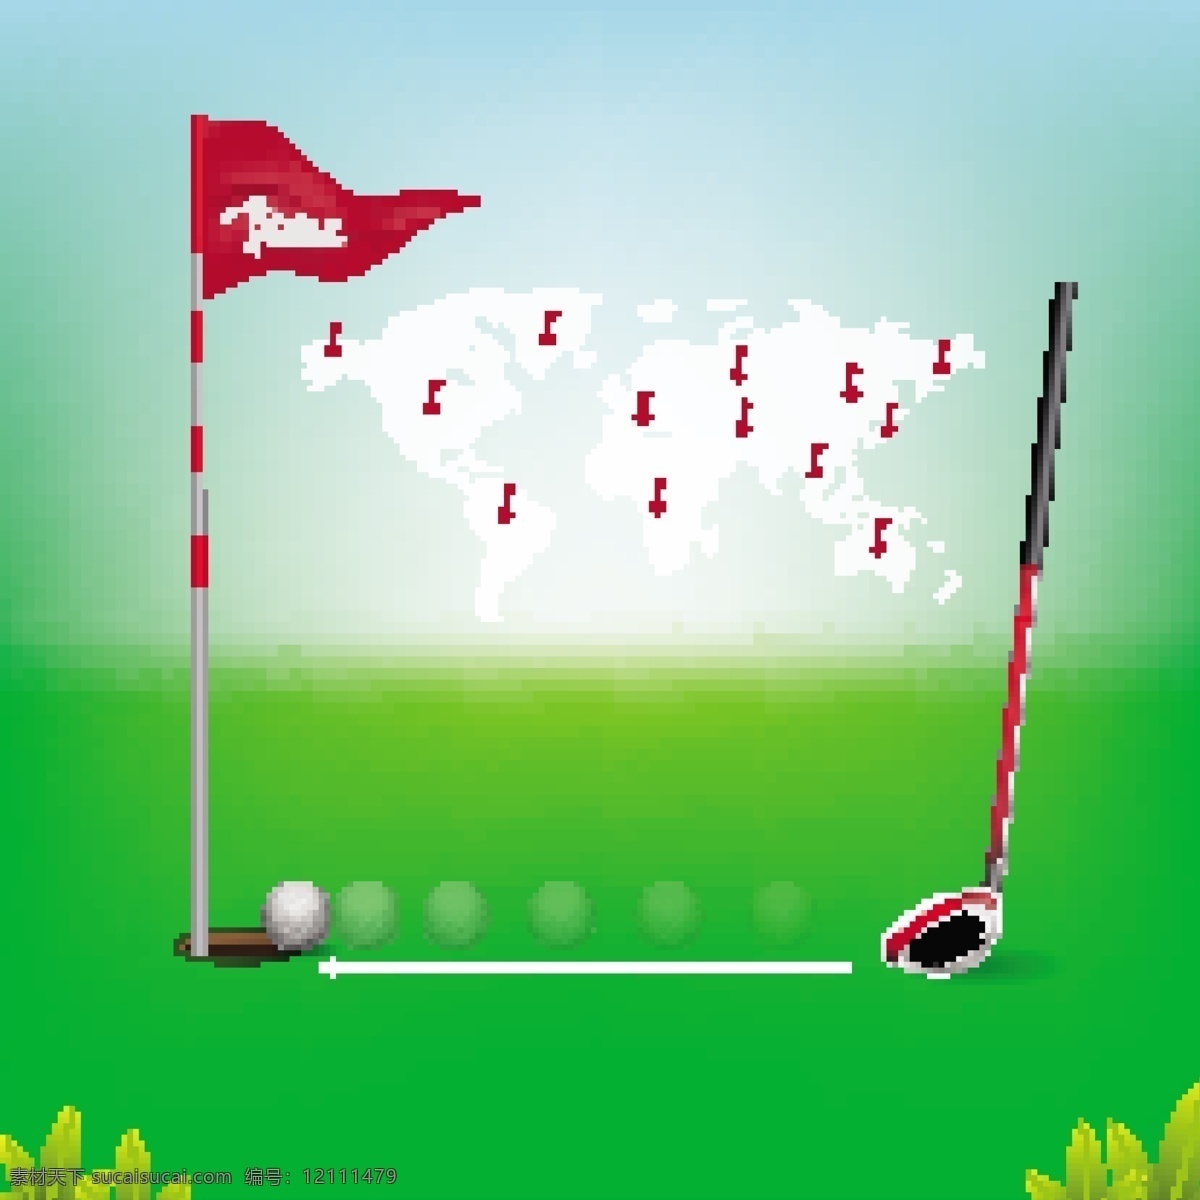 高尔夫球主题 高尔夫球运动 高尔夫球比赛 高尔夫球场 蓝天白云 高尔夫球 运动 高尔夫 绿色 球杆 绿叶 叶子 红旗 旗子 草地 绿地 青草 蝴蝶 剪影 姿势 奖杯 金色